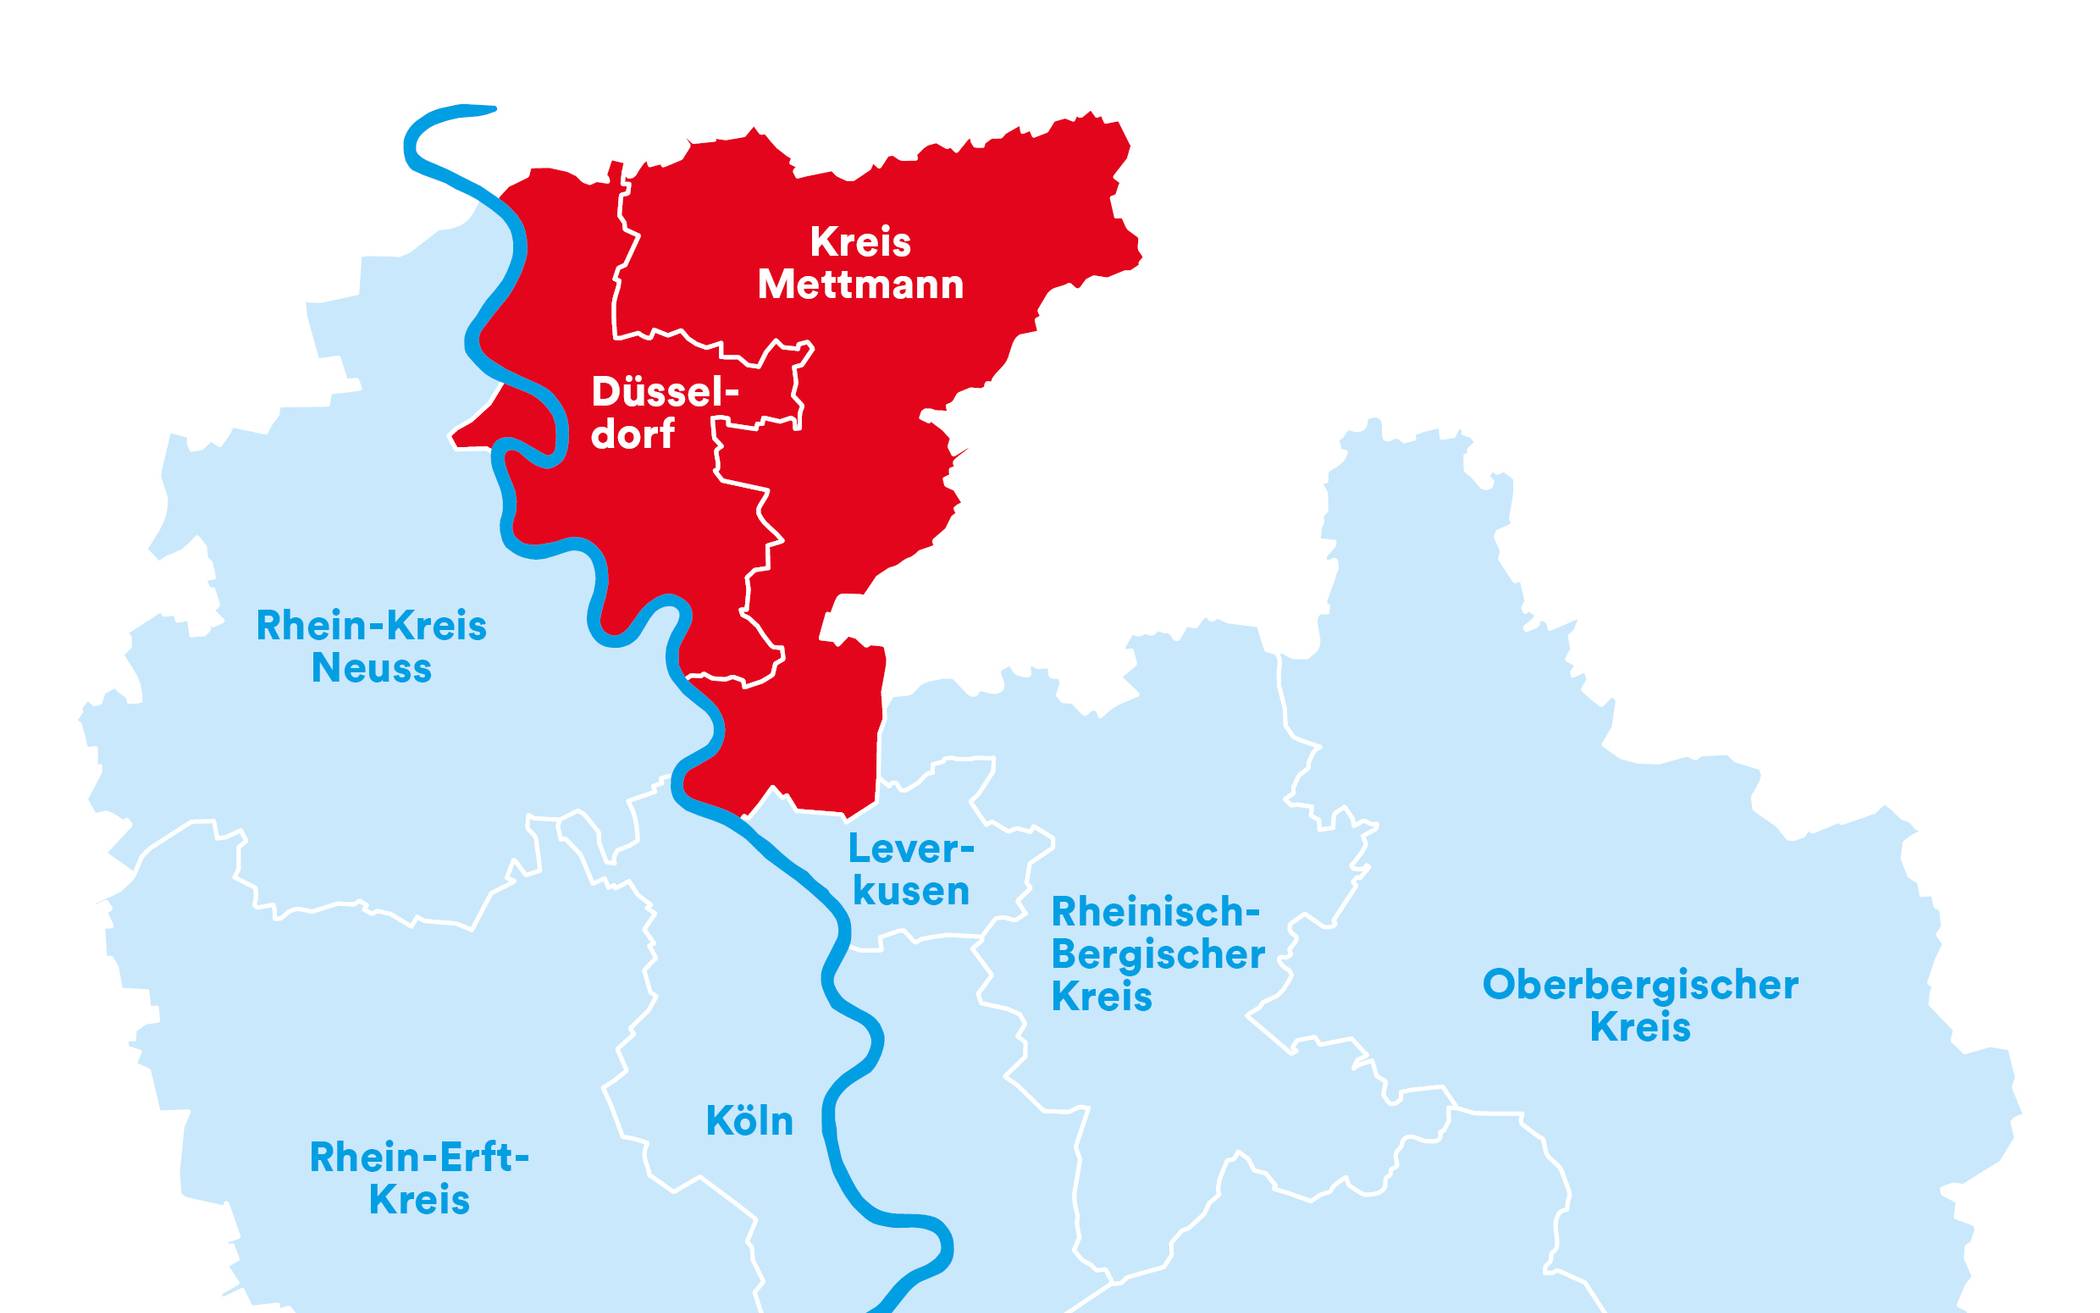 Die Karte zeigt die Radregion Rheinland plus die neuen Mitglieder Landeshauptstadt Düsseldorf und Kreis Mettmann.